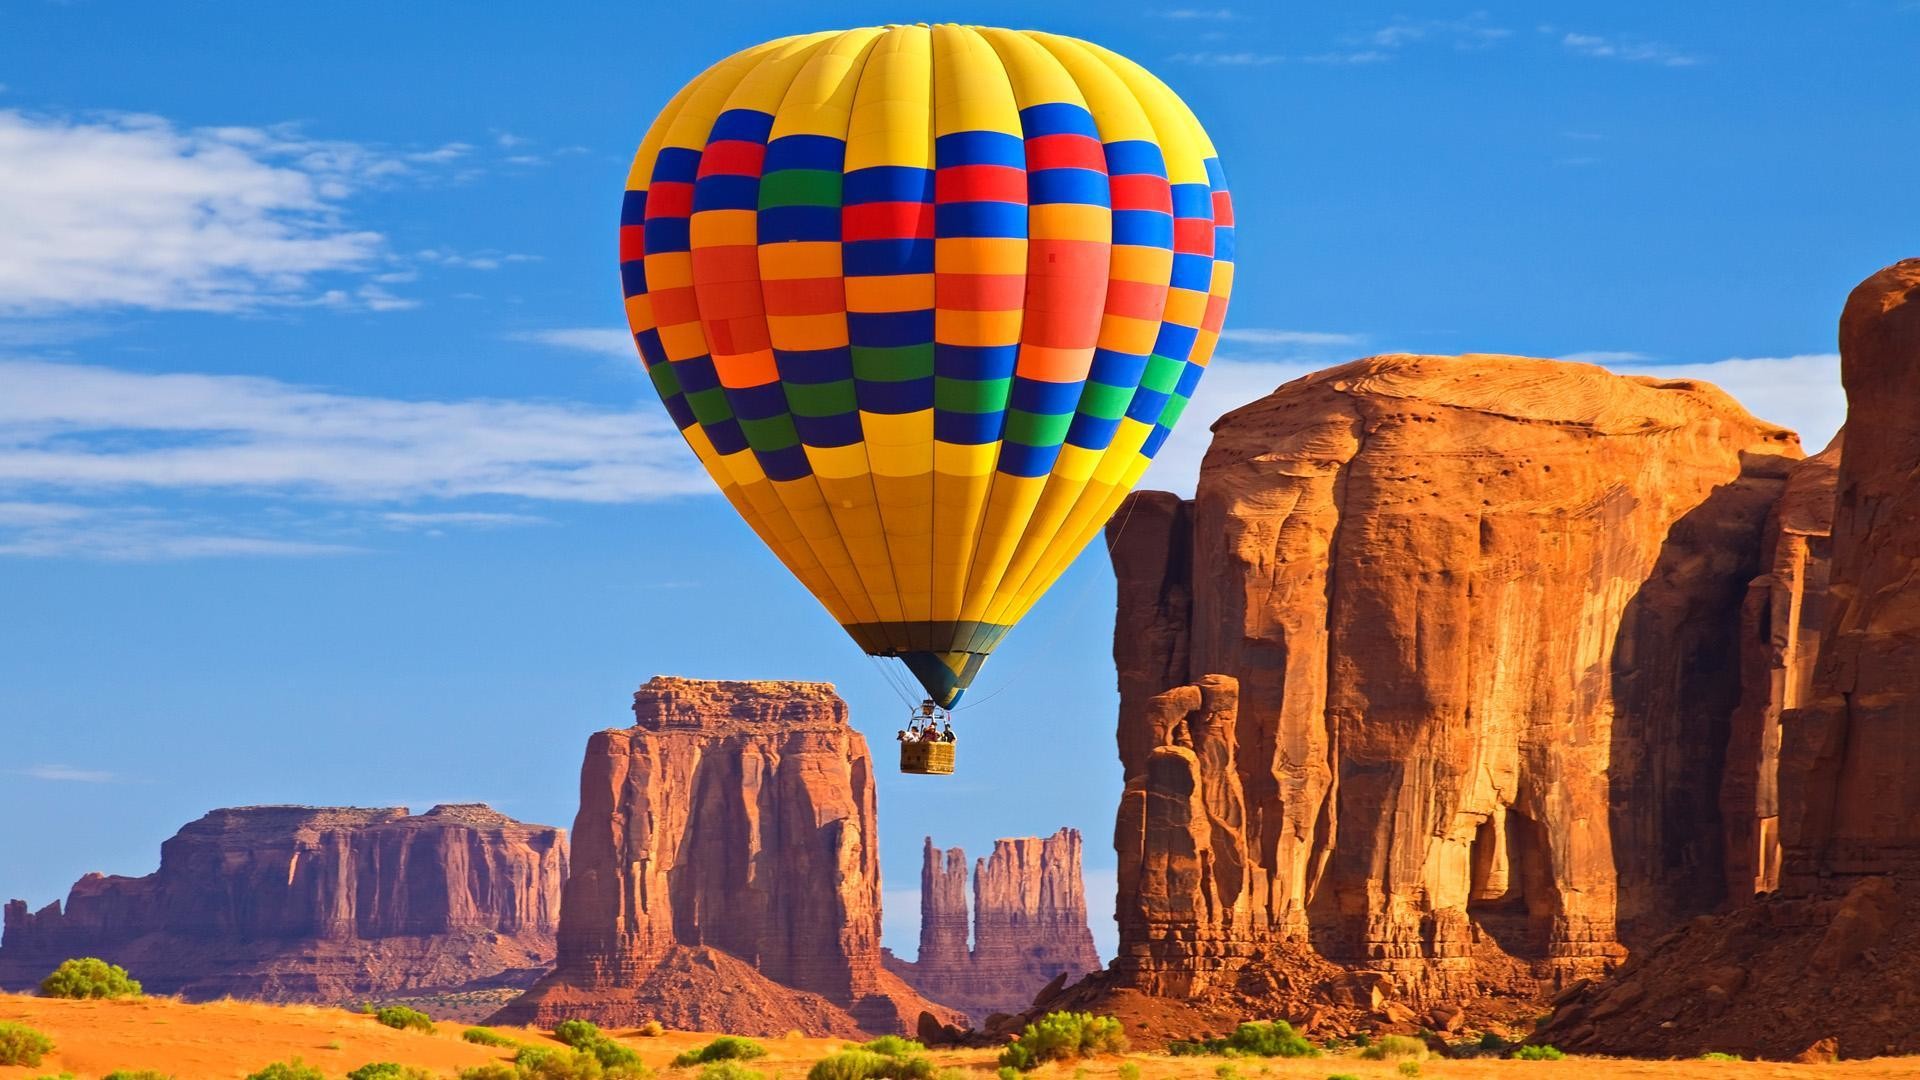 1920x1080 Ballonfahren durch die DenkmÃ¤ler, Monument Valley, Arizona